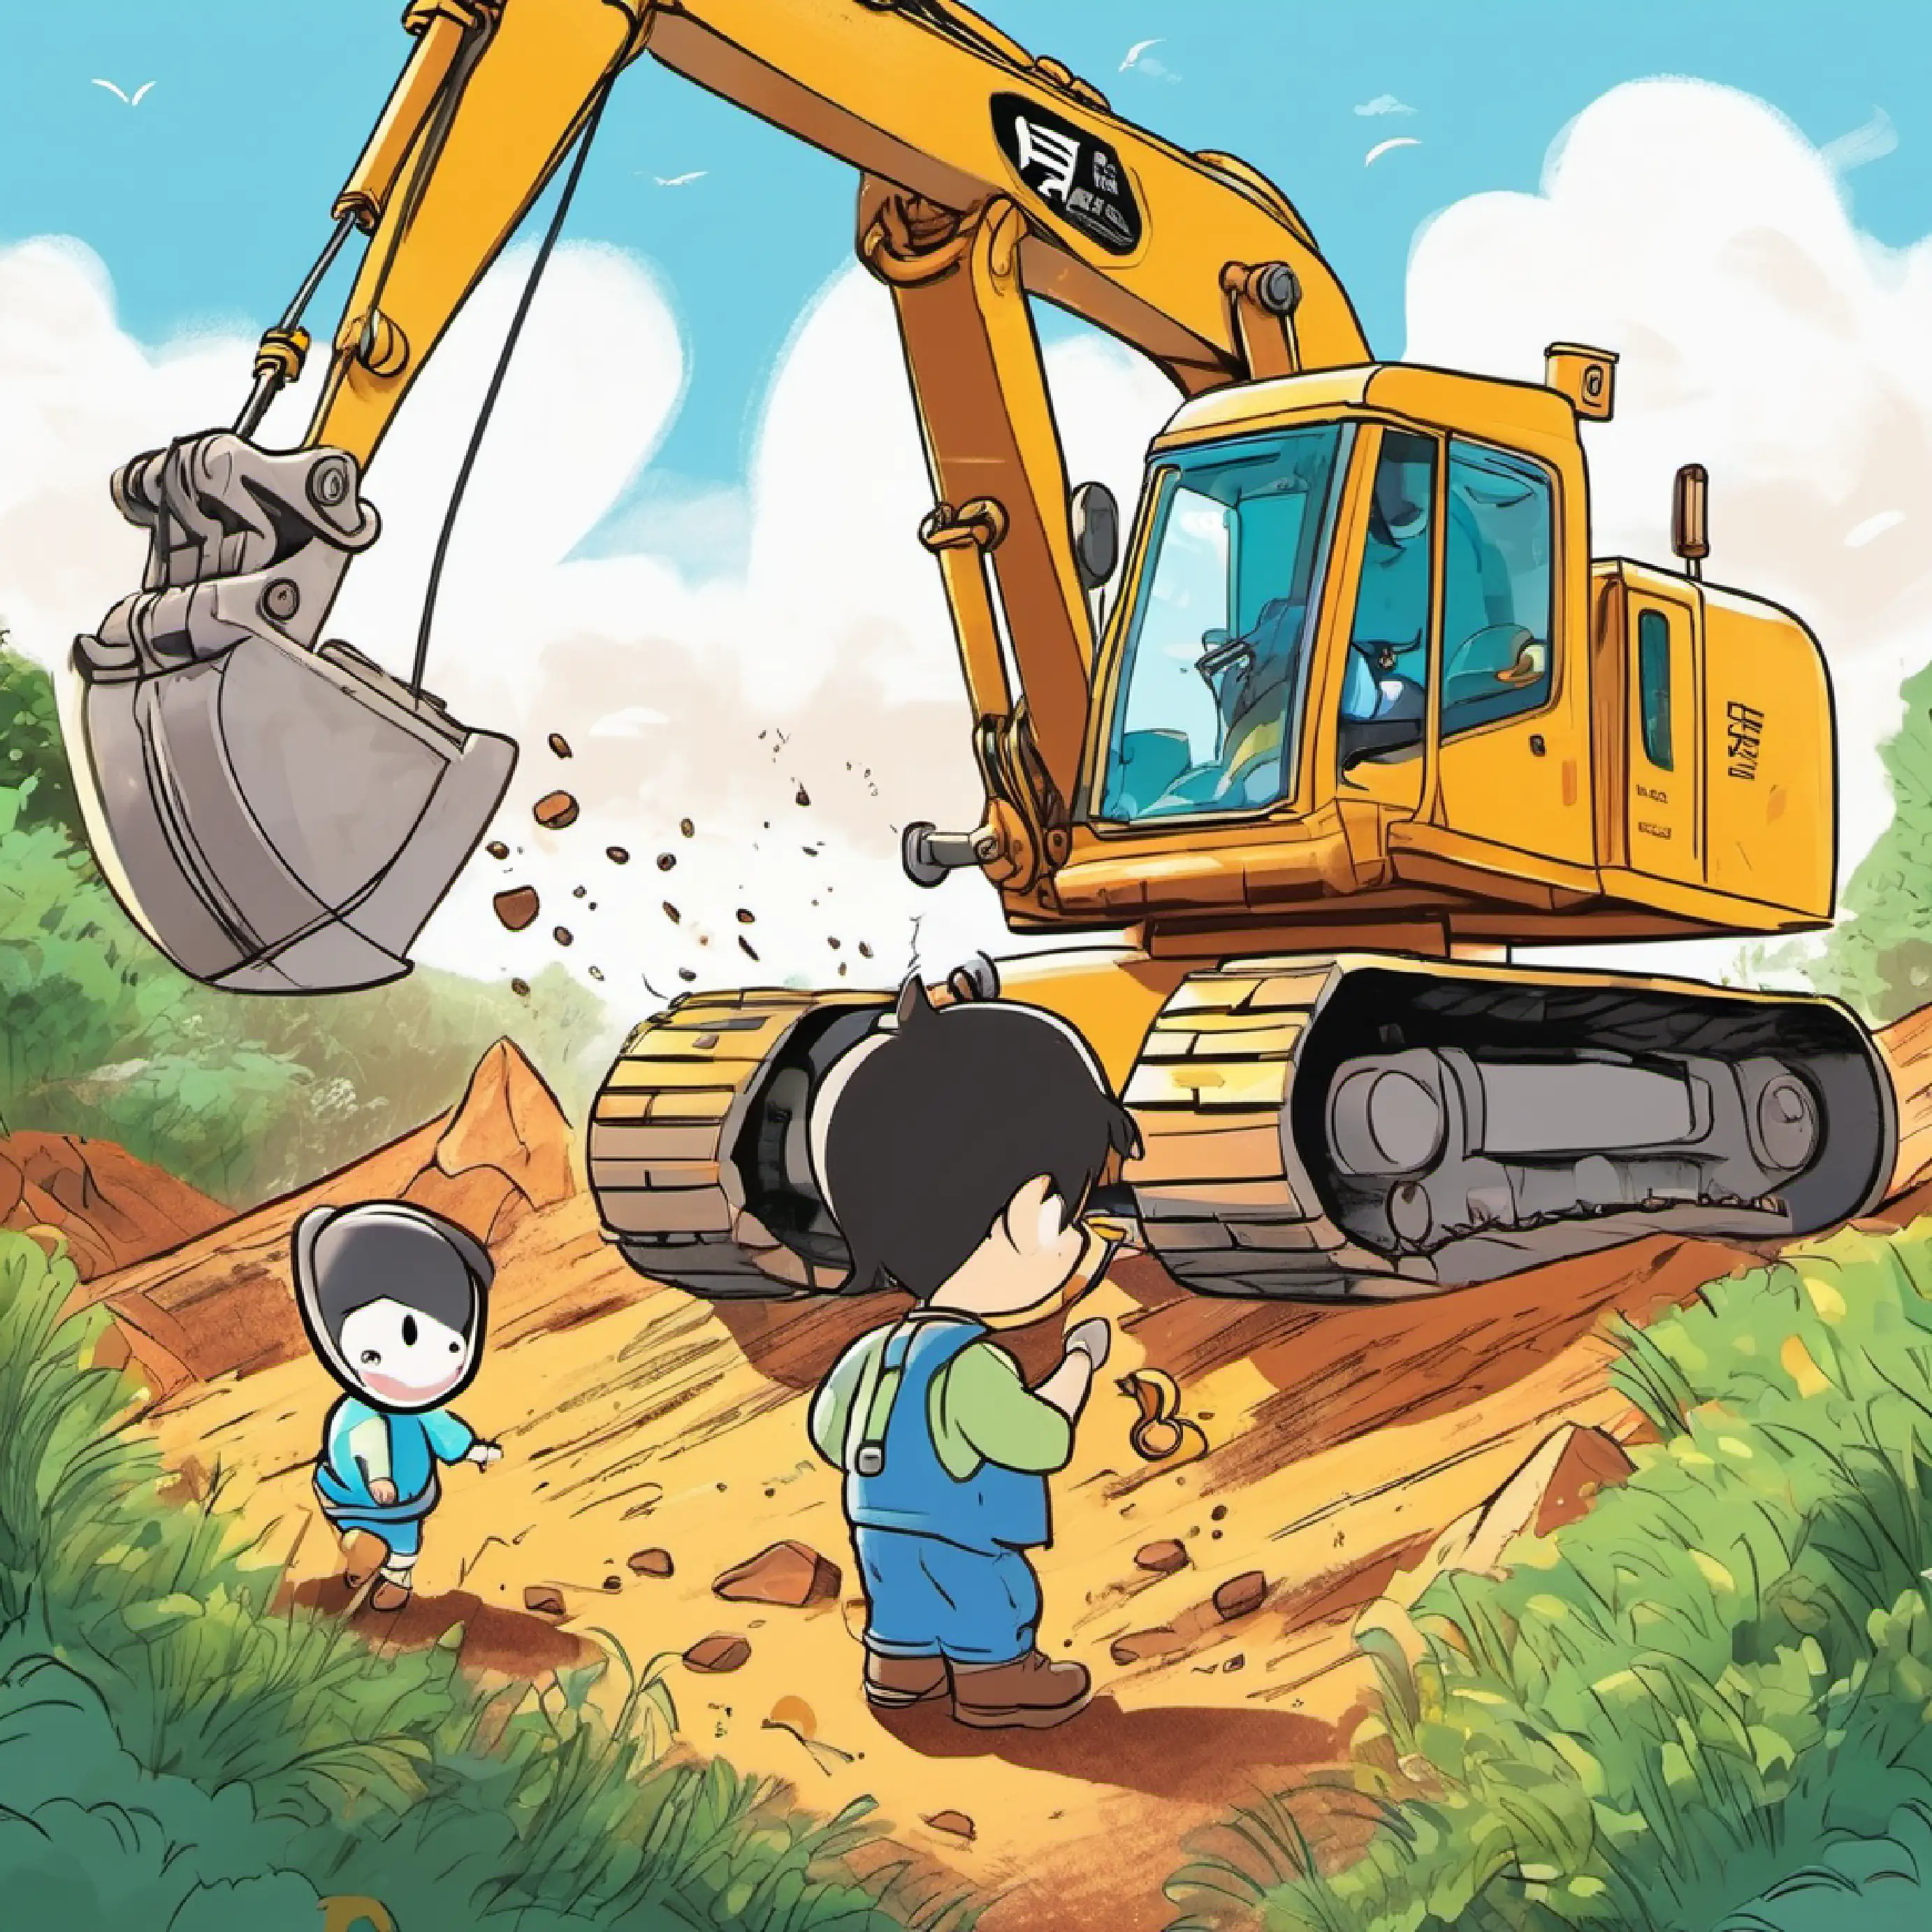 Xiao Zhu Zhu playing with the excavator.